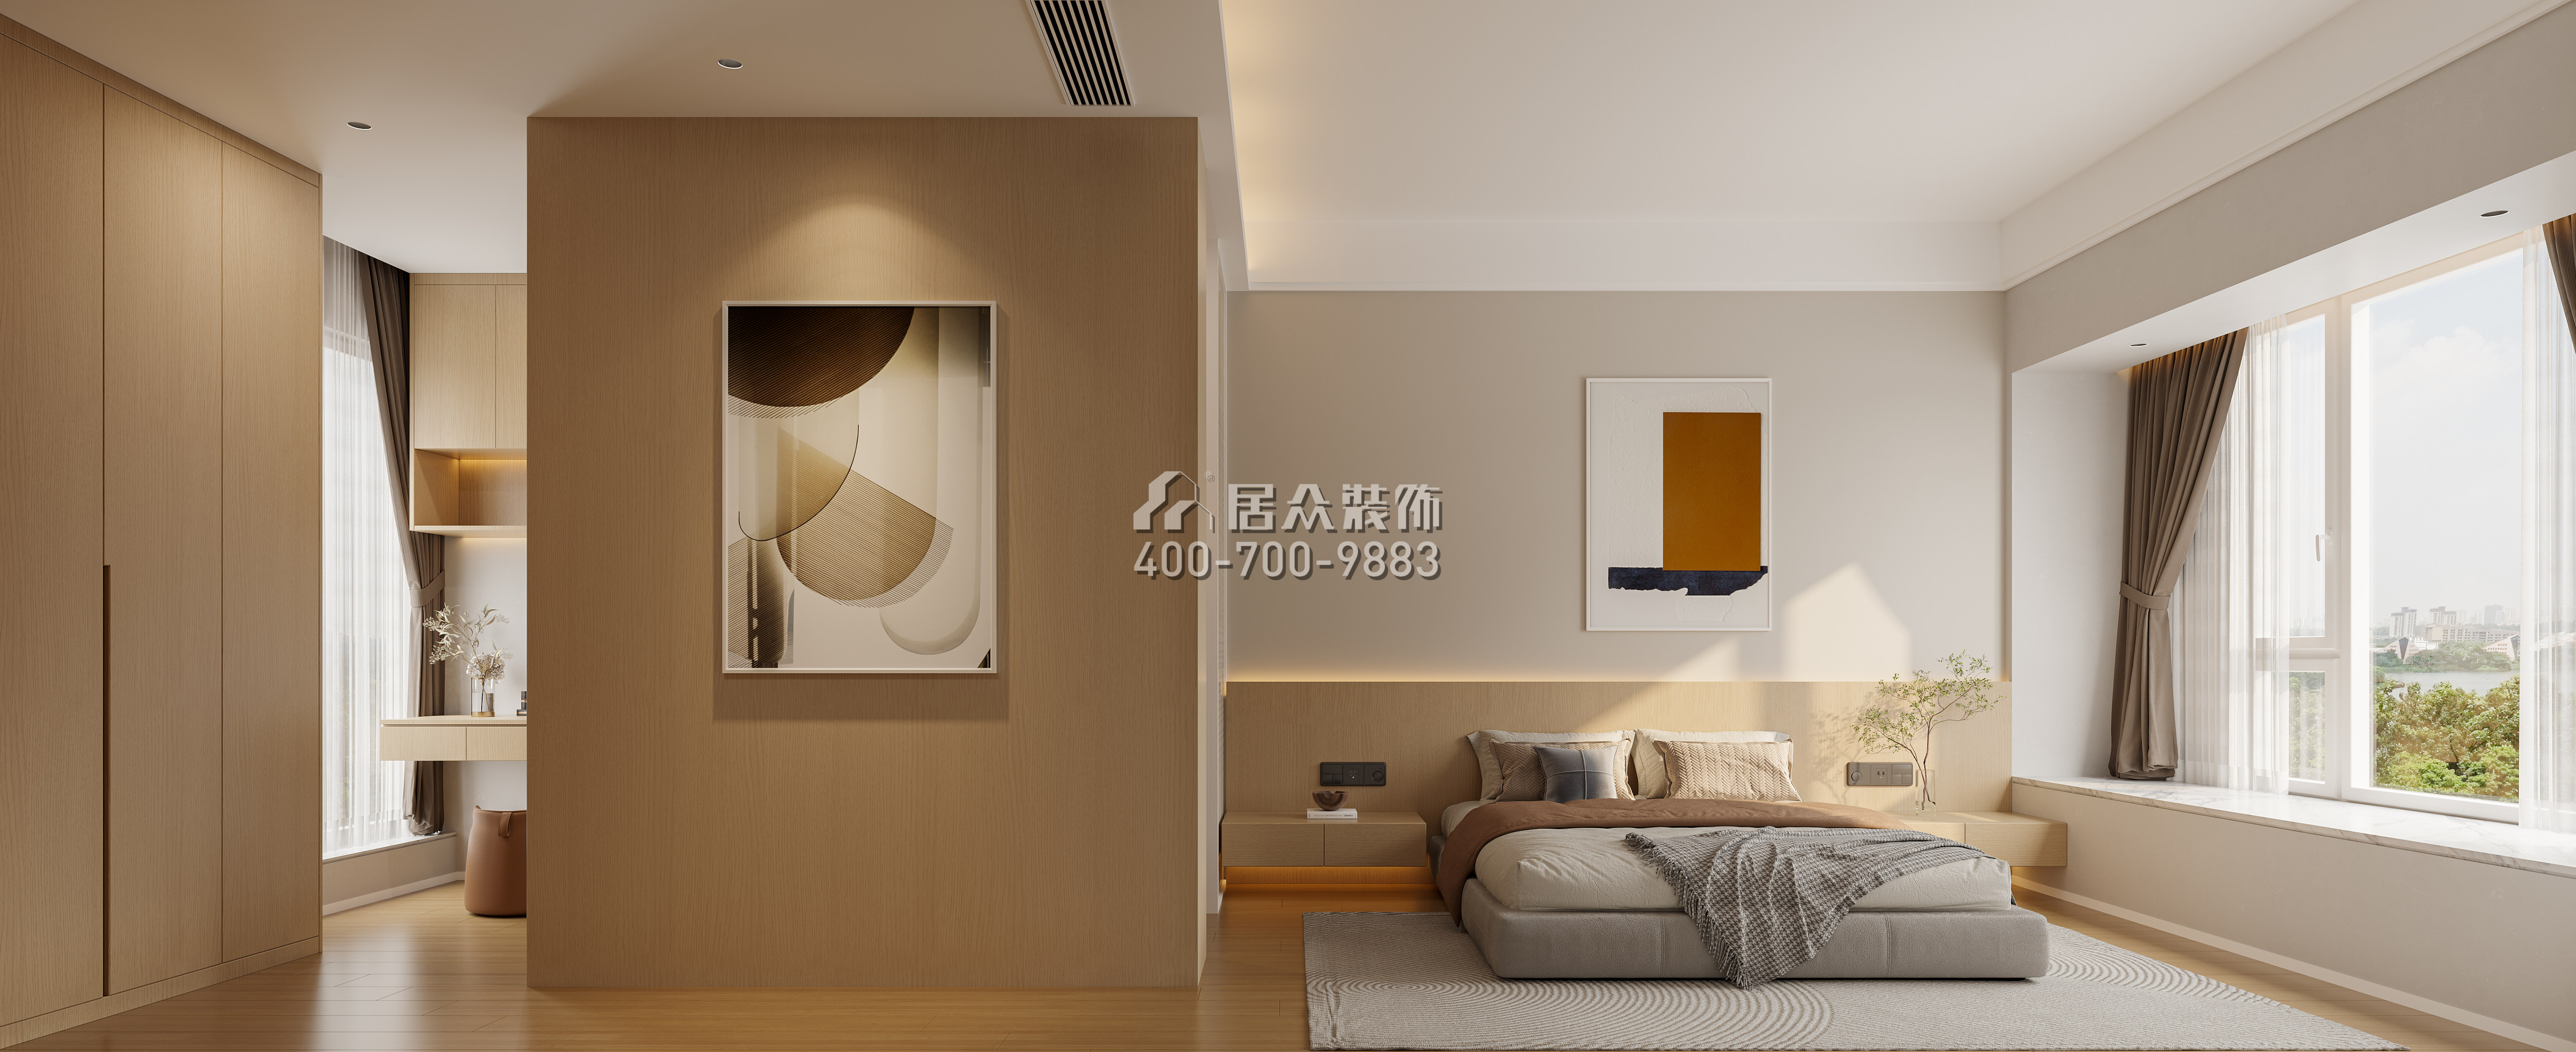 海印長城136平方米現代簡約風格平層戶型臥室裝修效果圖